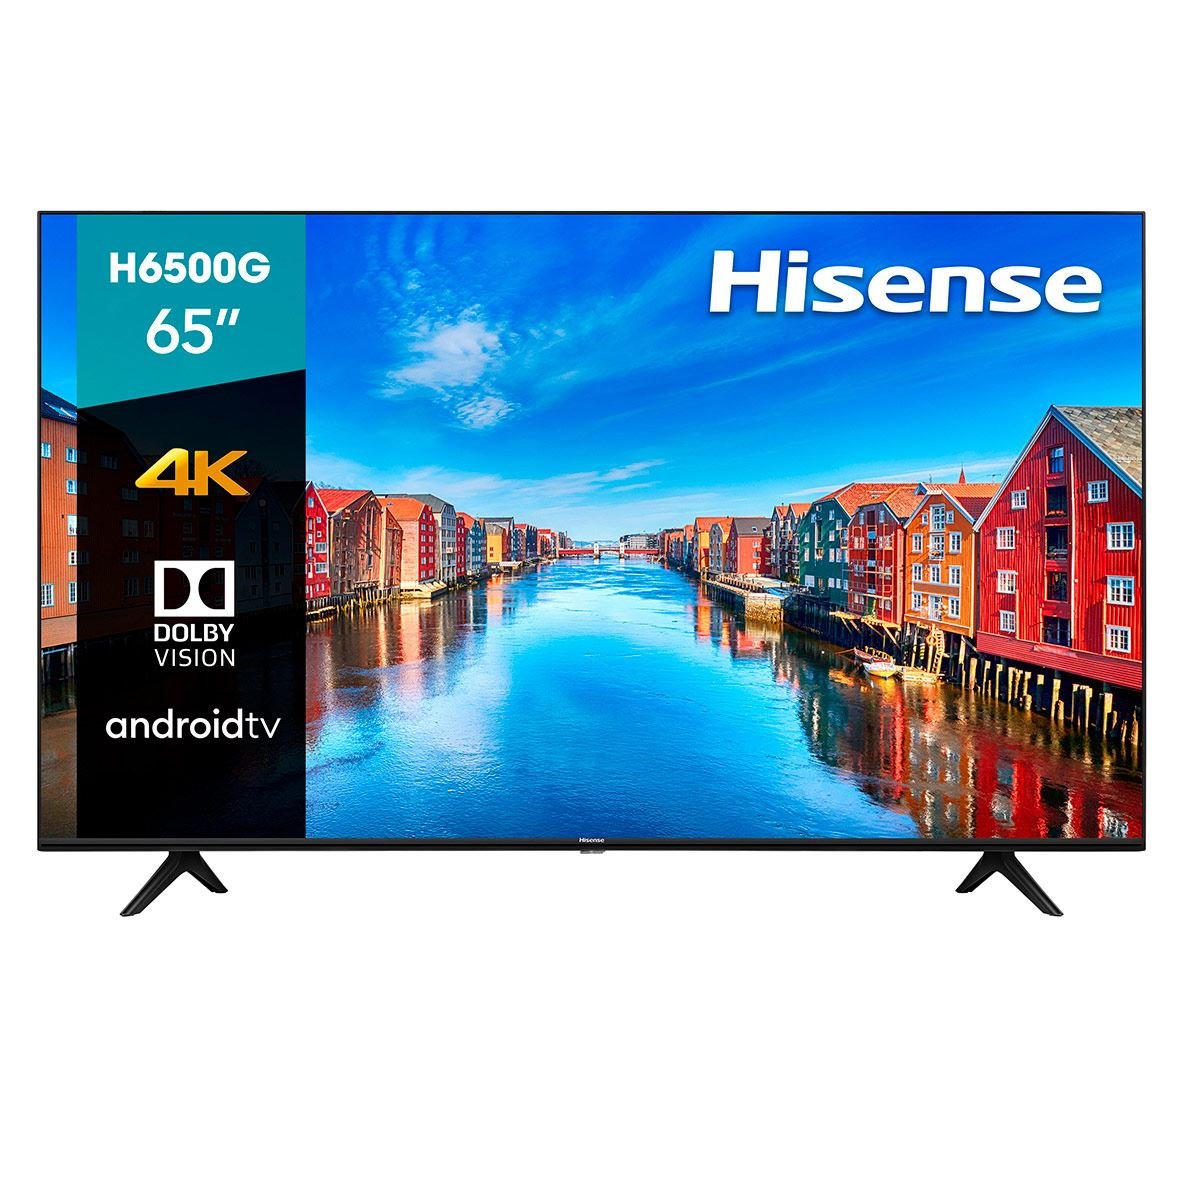 Pantalla Hisense H65 4K UHD Android TV 65 pulgadas (65H6500G 2020)